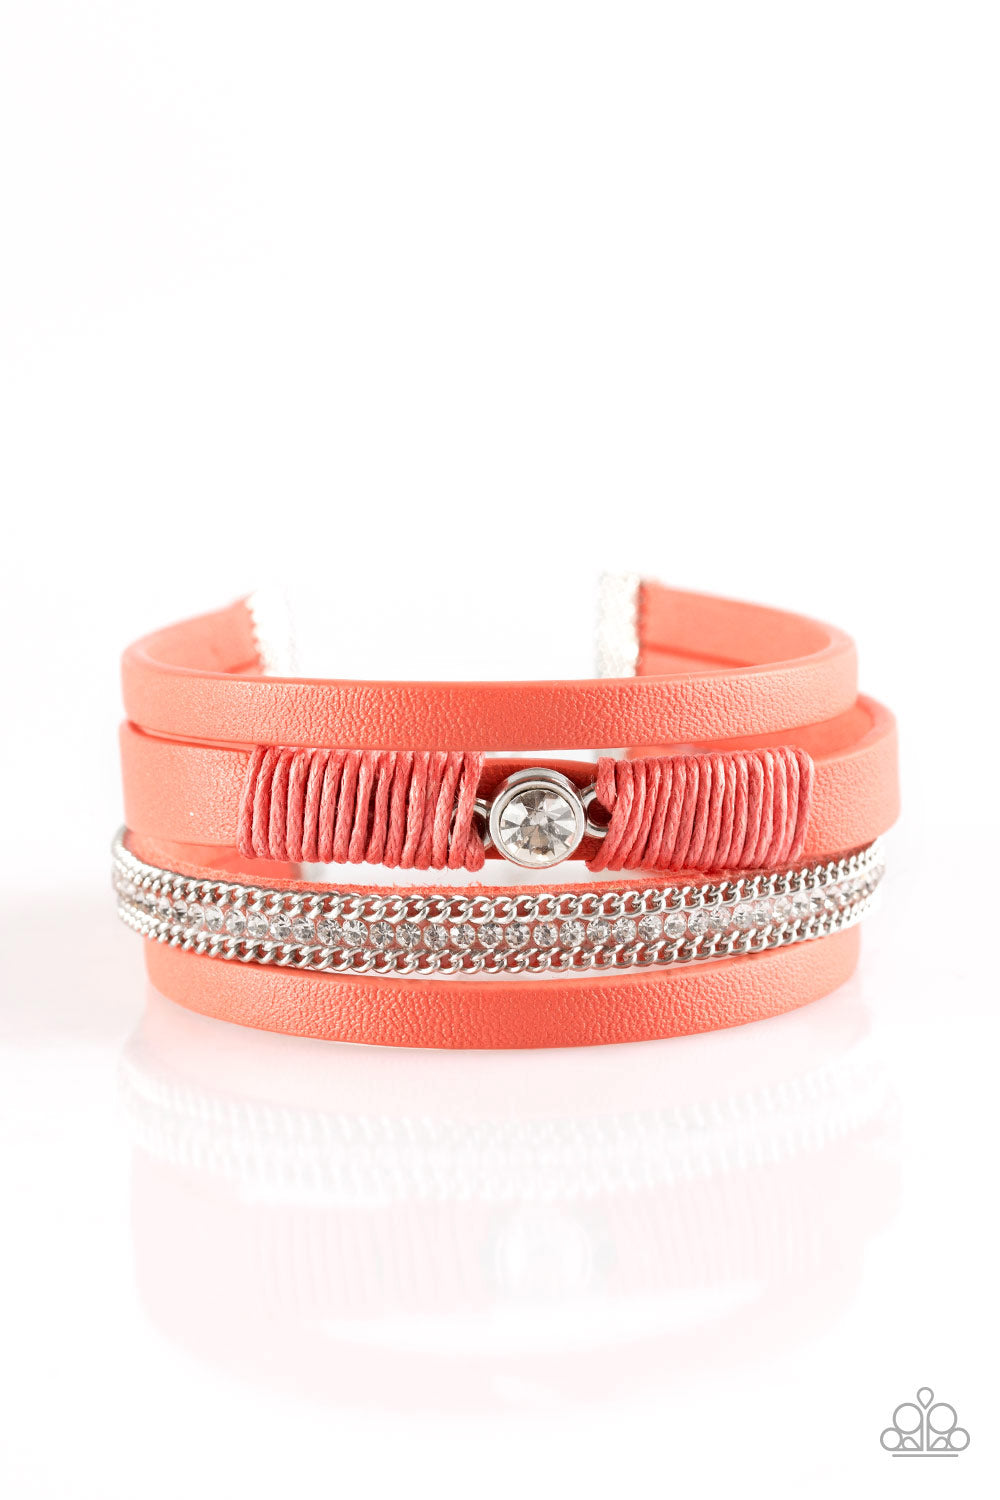 Catwalk Craze - Orange wrap bracelet